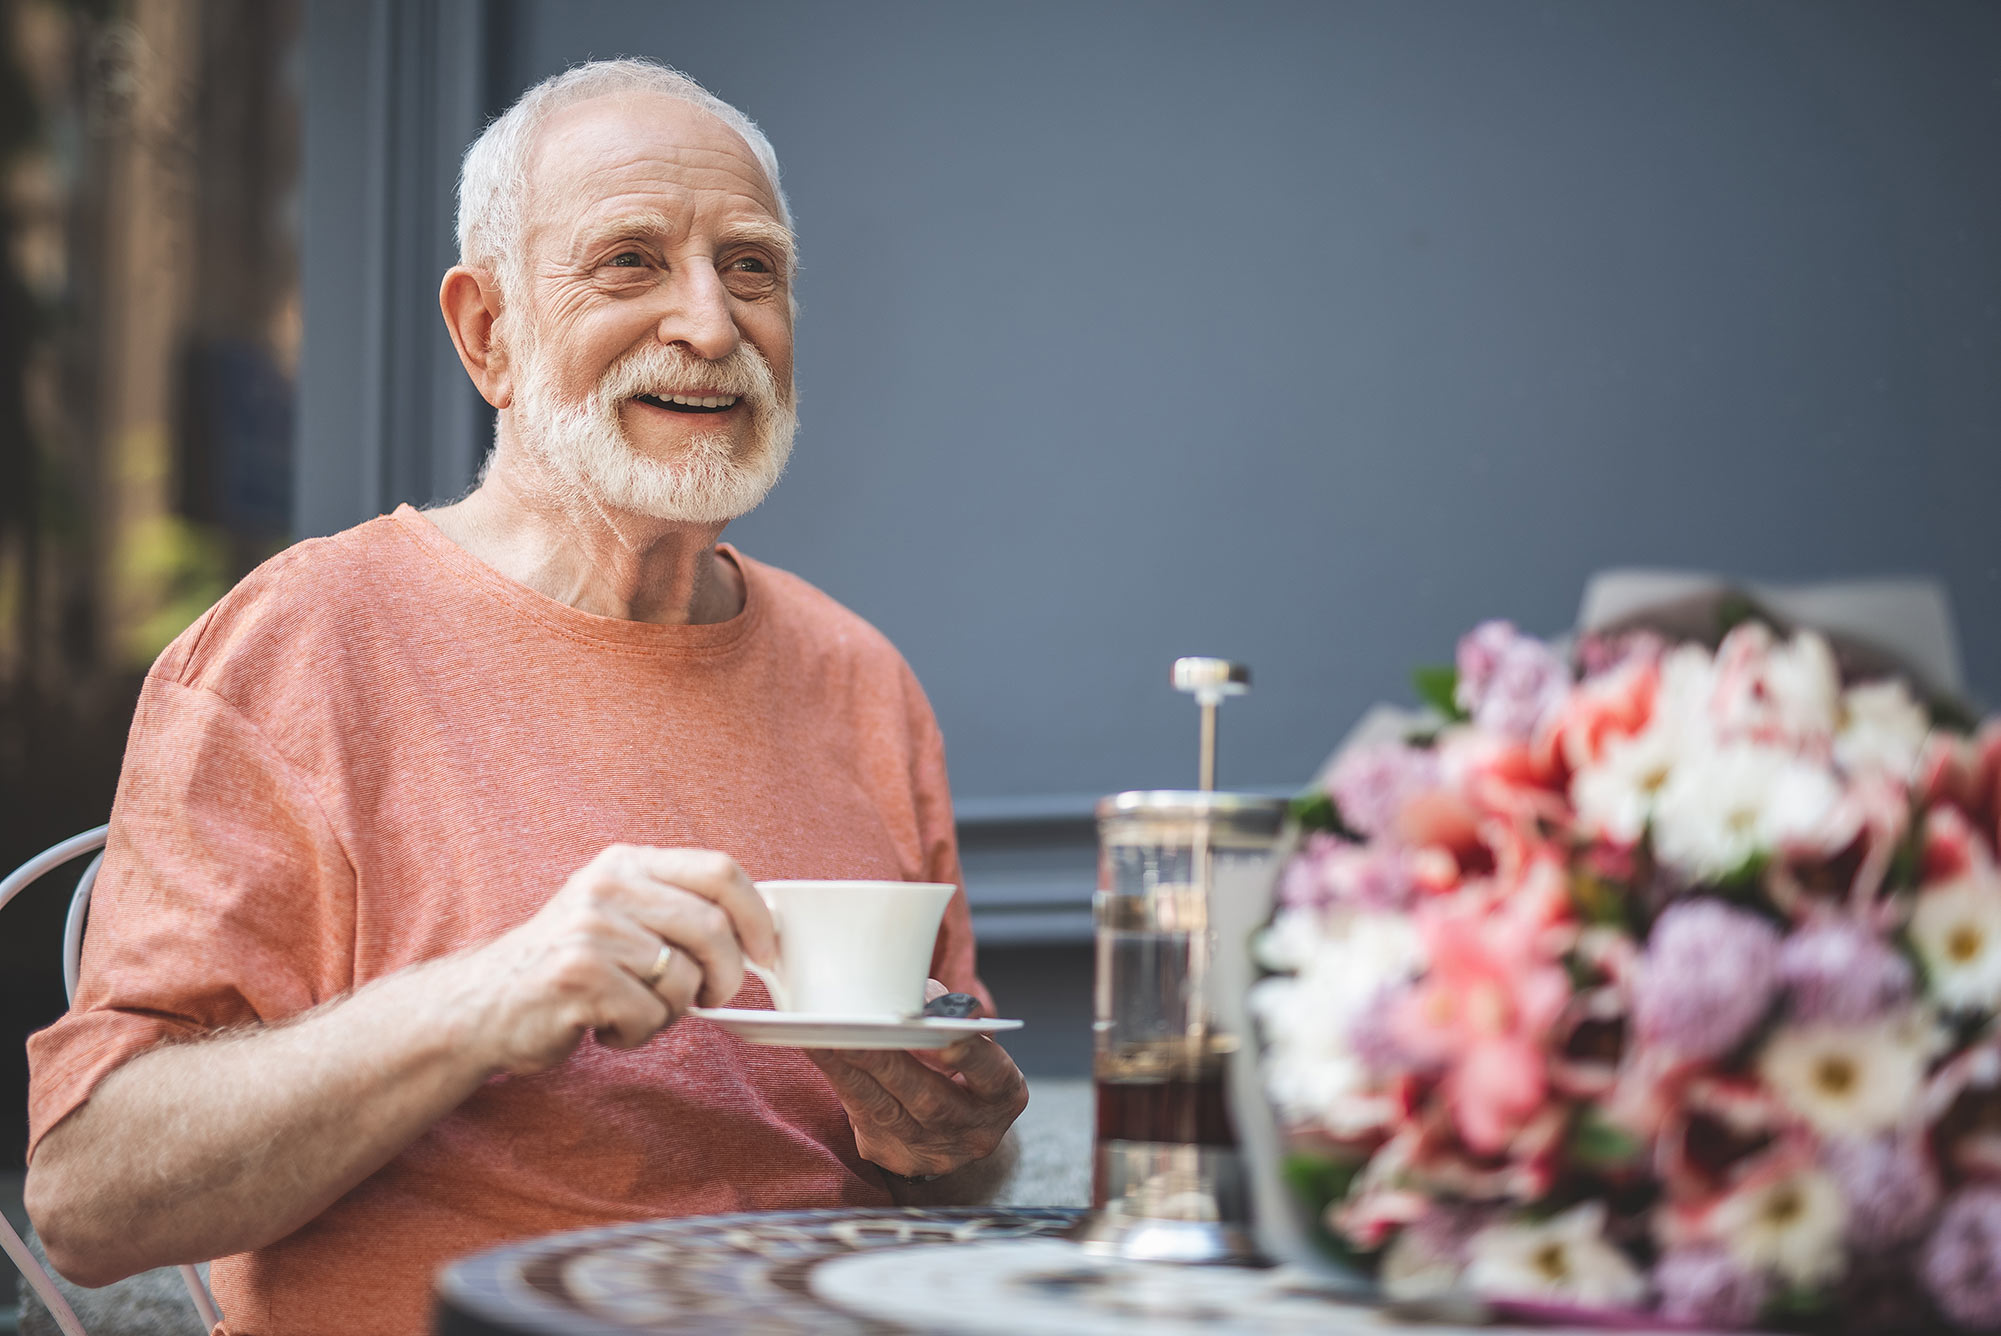 Ein lächelnder älterer Mann sitzt an einem Tisch auf dem ein Blumenstrauß steht und trinkt Tee